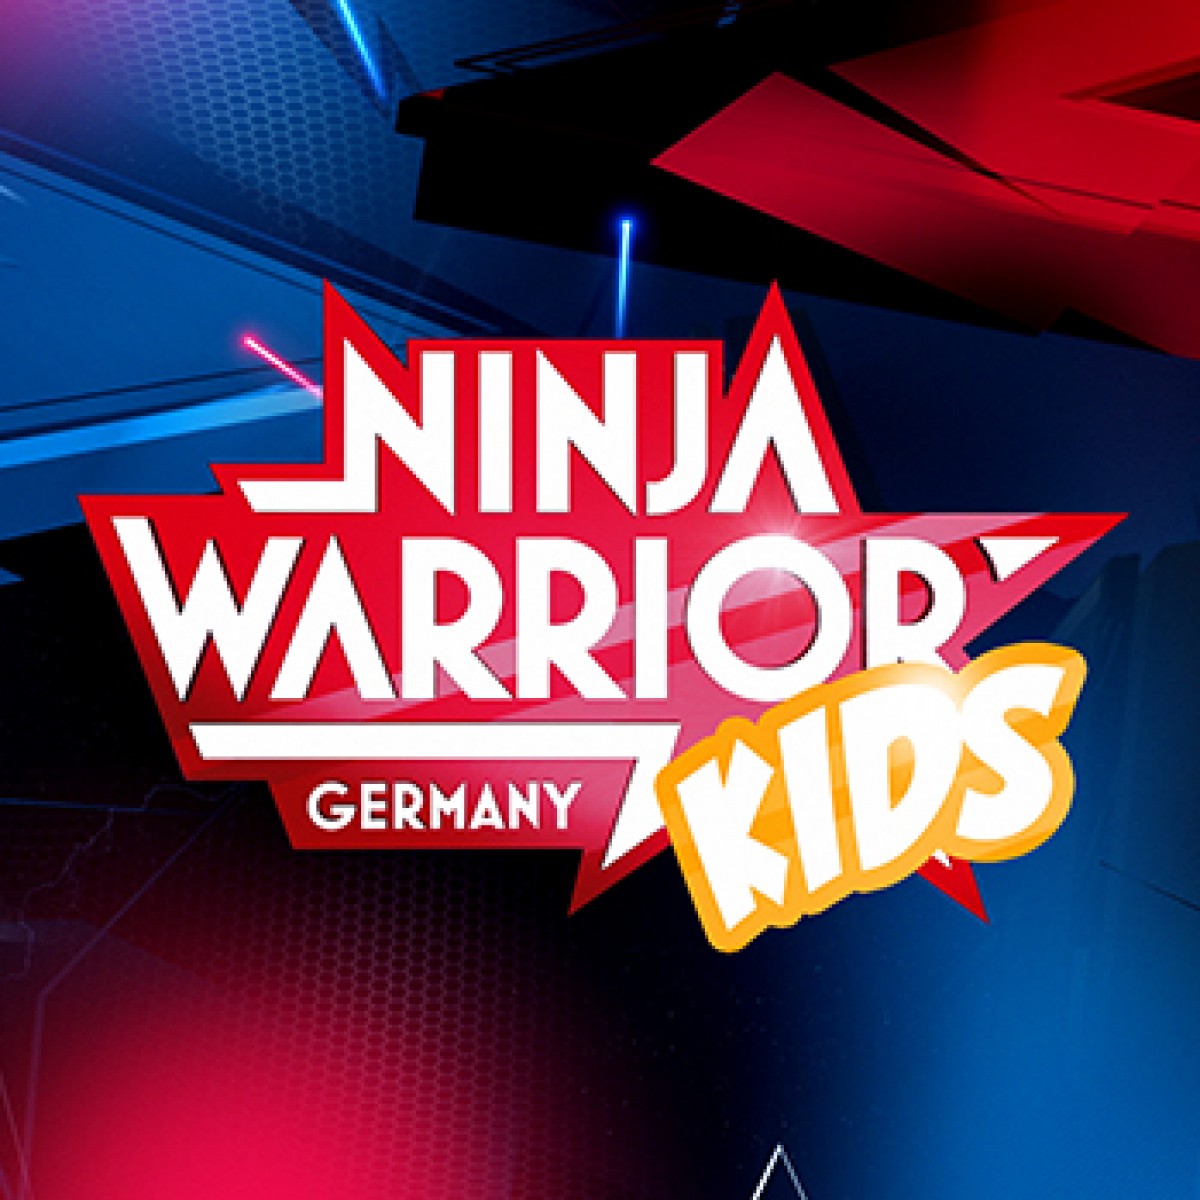 TVNOW startet KidsBereich mit "Ninja Warrior Germany Kids